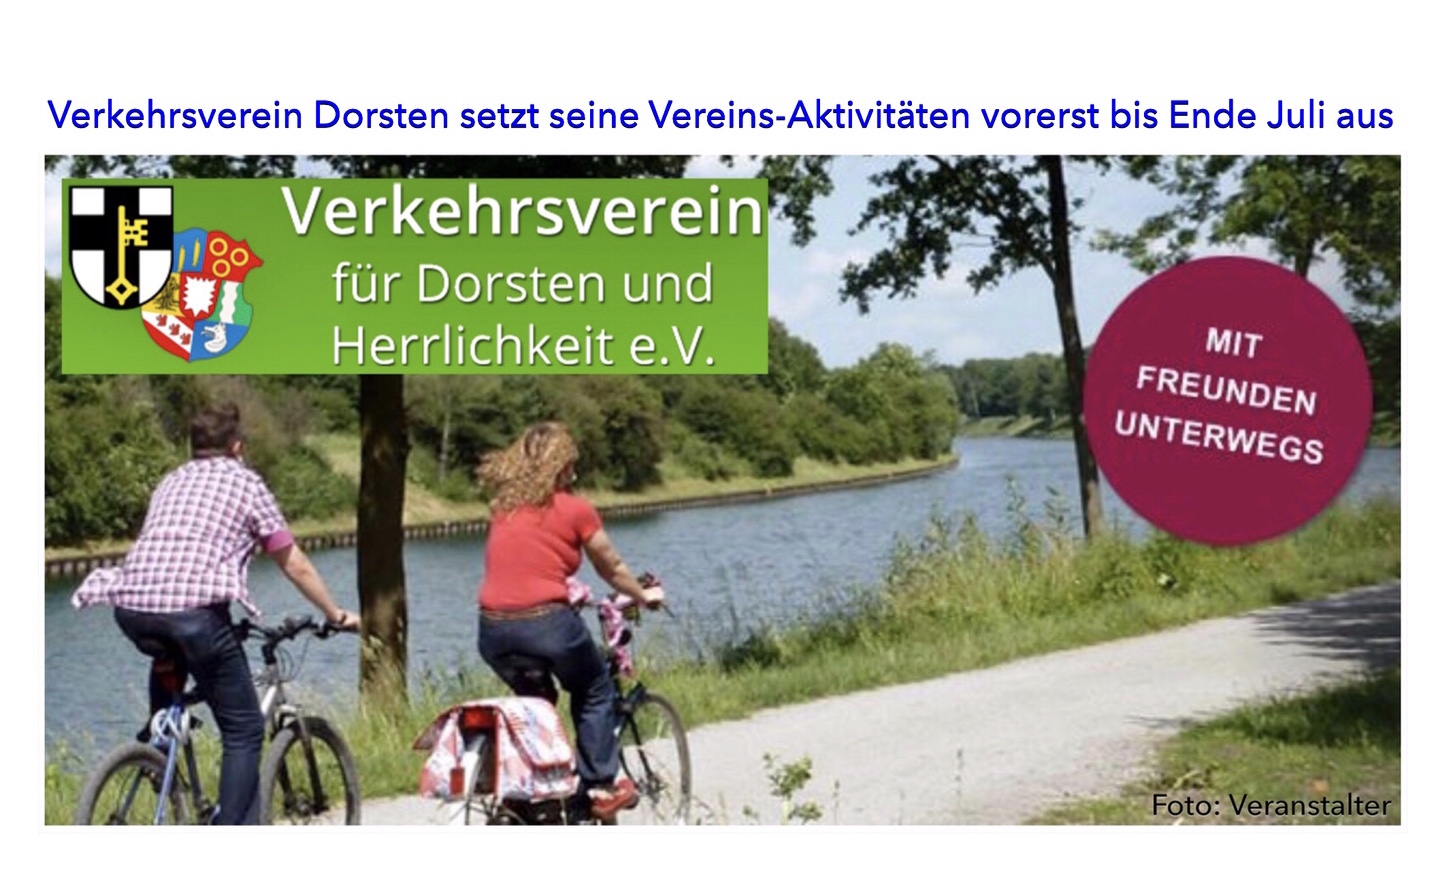 Verkehrsverein Dorsten setzt seine Vereins-Aktivitäten vorerst bis Ende Juli aus